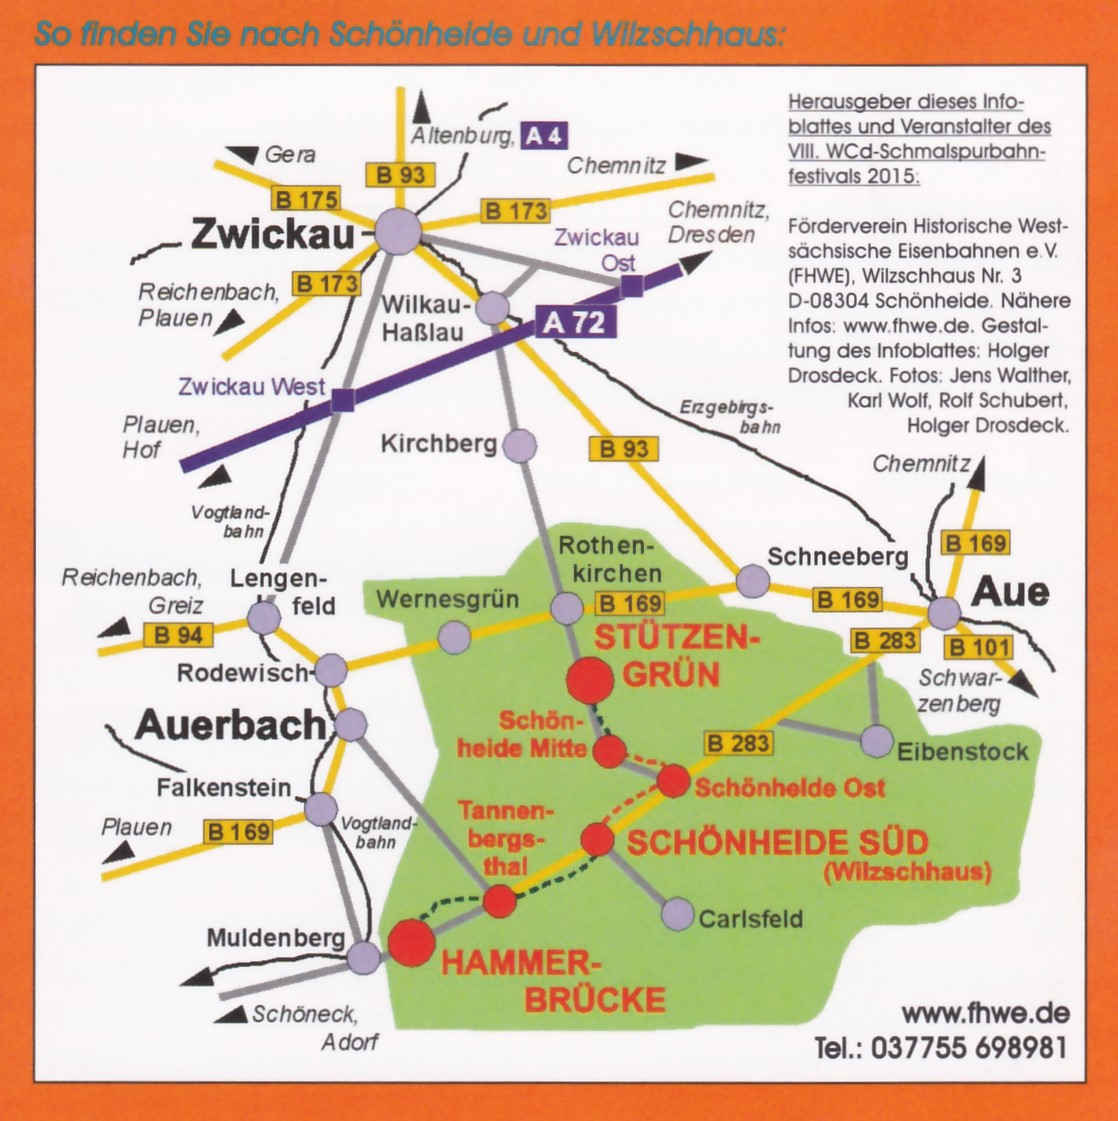 Auf dem Prospekt zur Ankndigung des VIII. WCd-Schmalspurbahnfestivals 2015 ist sehr gut die Anreise erklrt. Schnheide liegt in Sachsen zwischen Auerbach und Aue und Zwickau und der Landesgrenze nach Tschechien. 